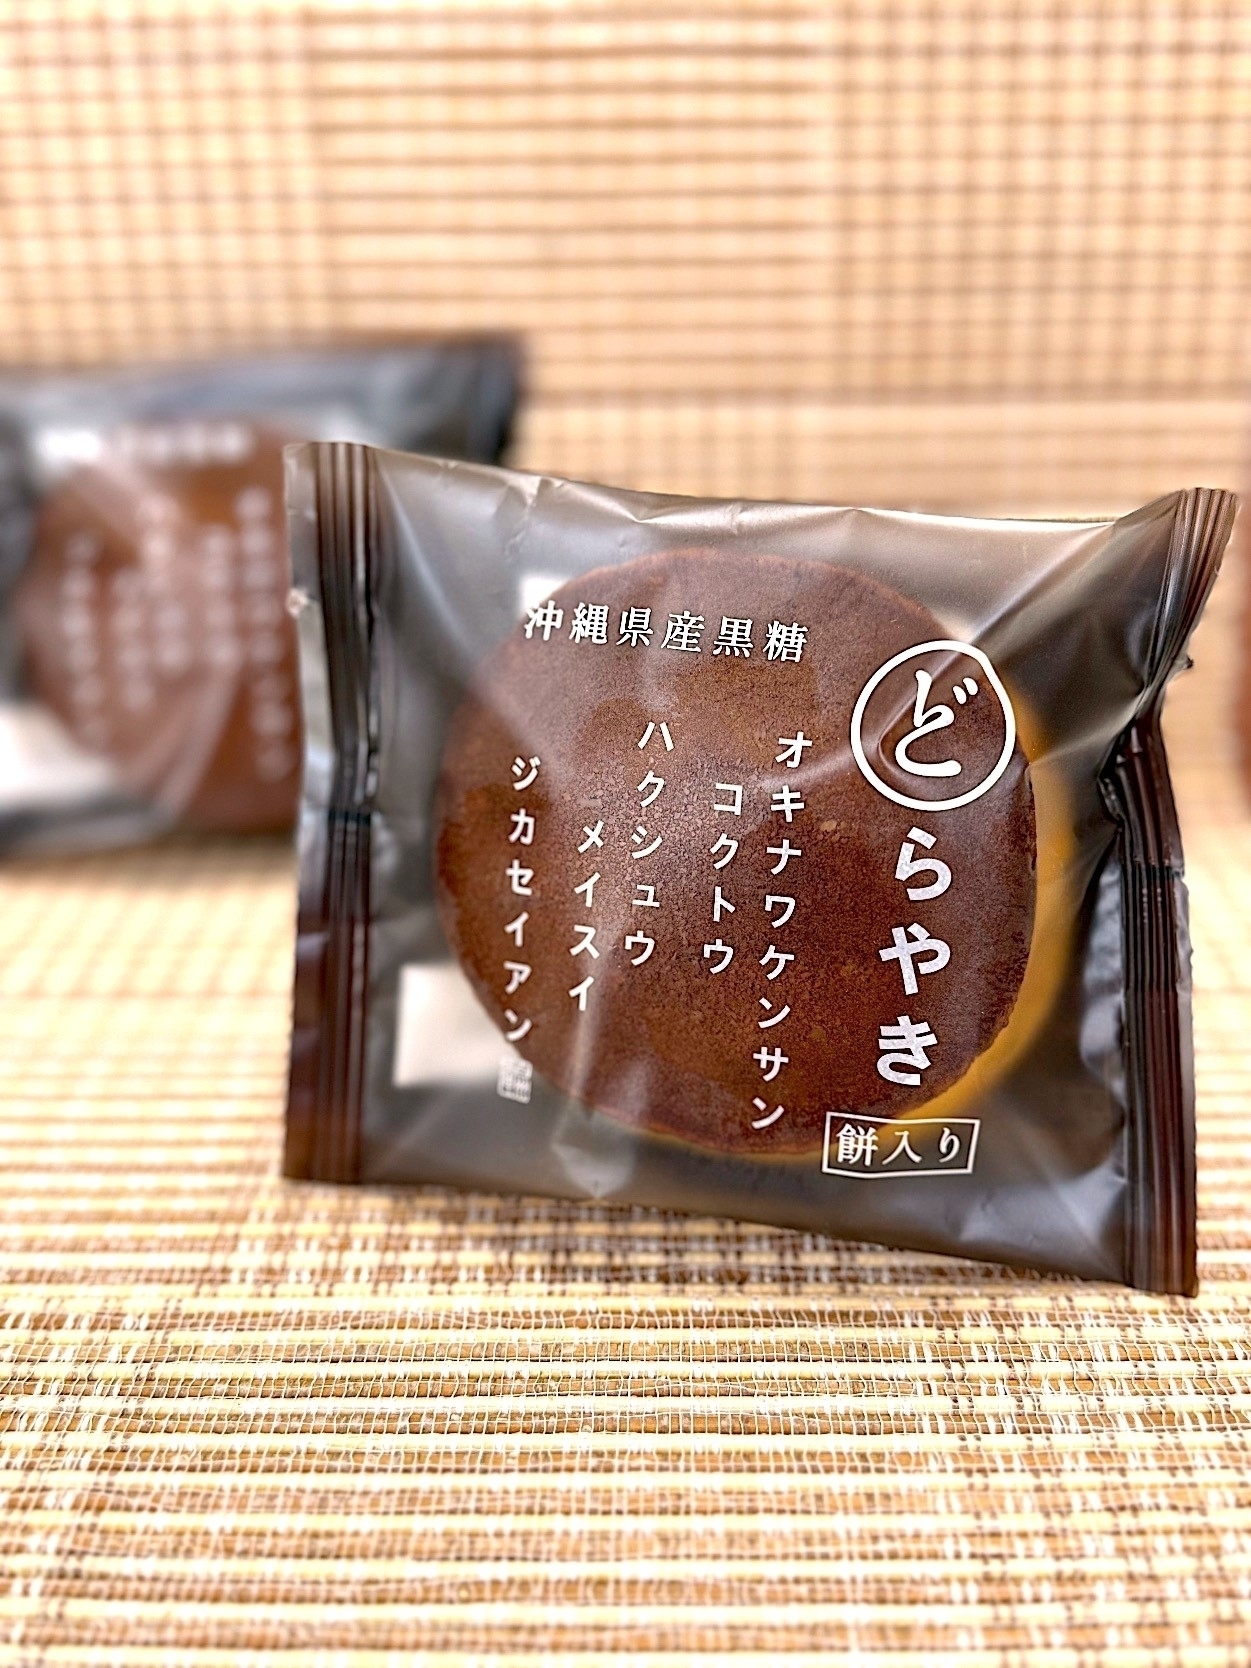 シャトレーゼのオススメのスイーツ「沖縄県産黒糖どらやき 餅入り」